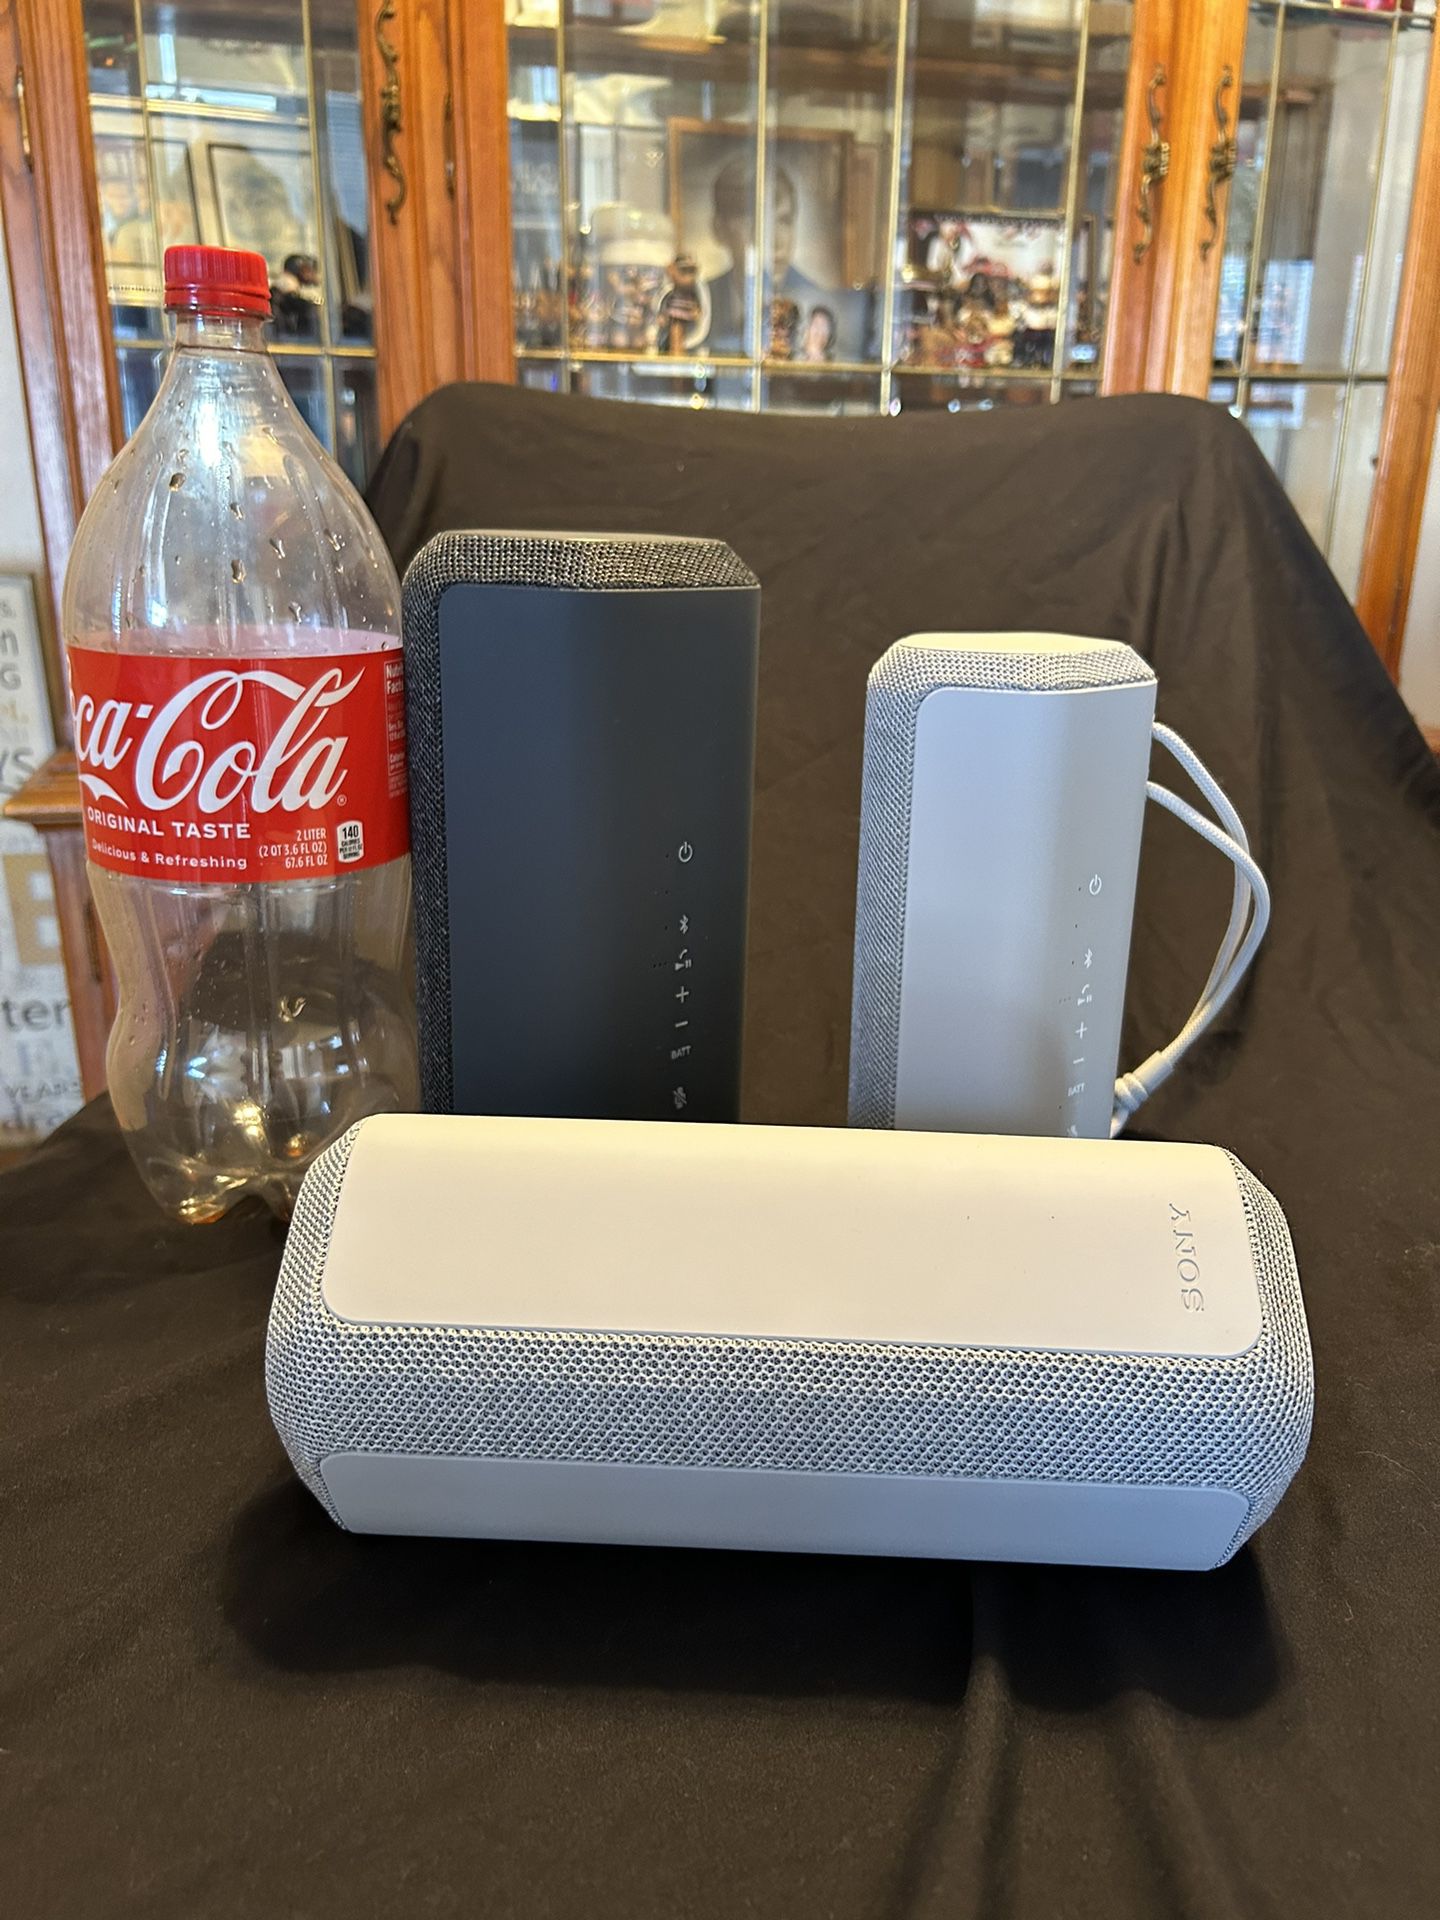 Sony Bluetooth Speakers Waterproof And Dustproof